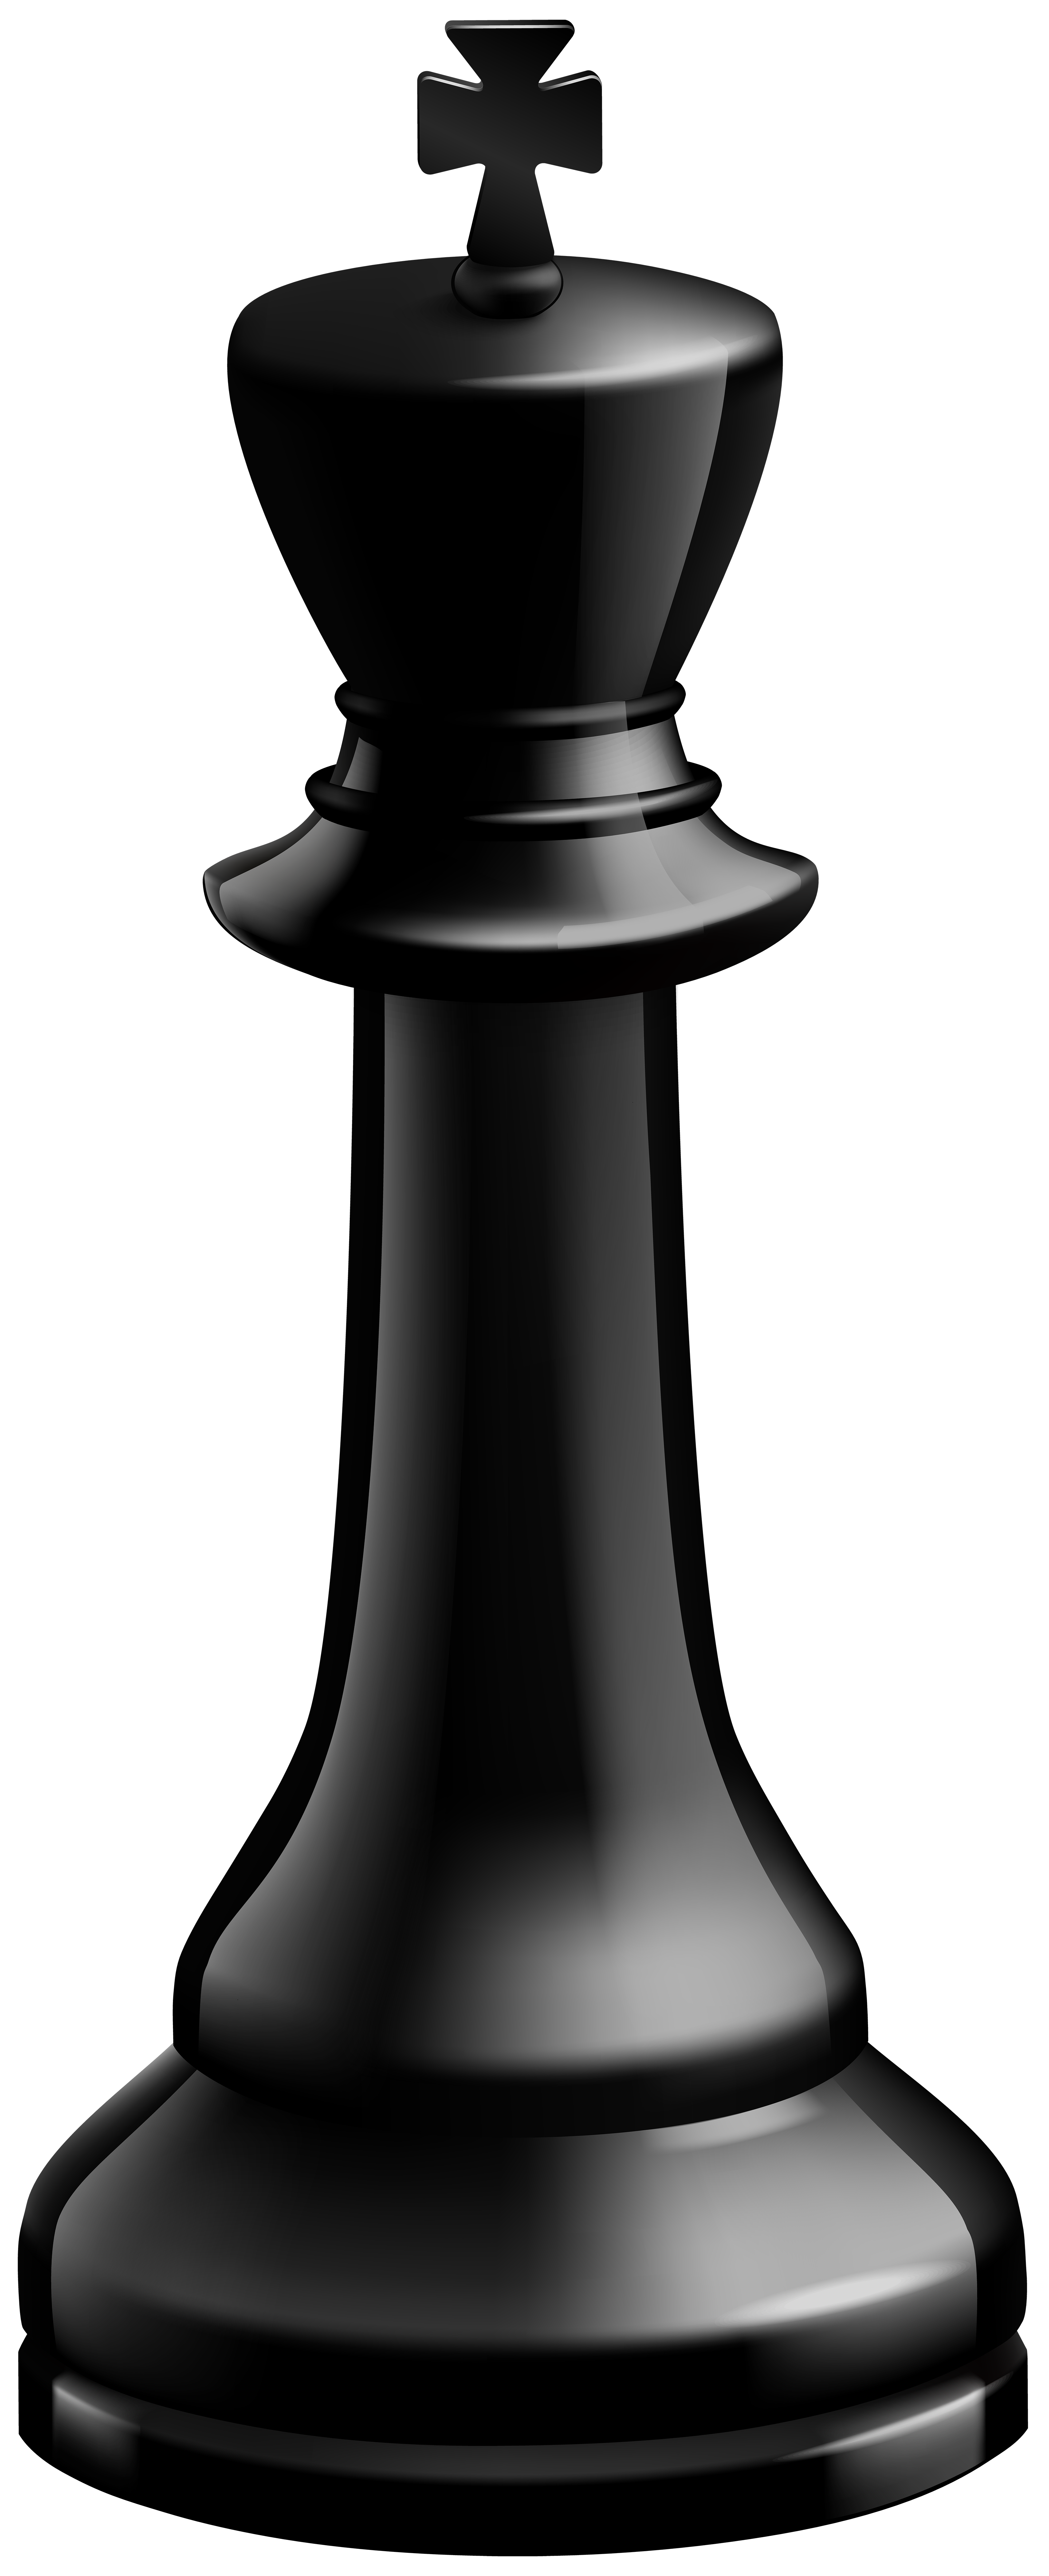 Wallpaper white, black, chess, king for mobile and desktop